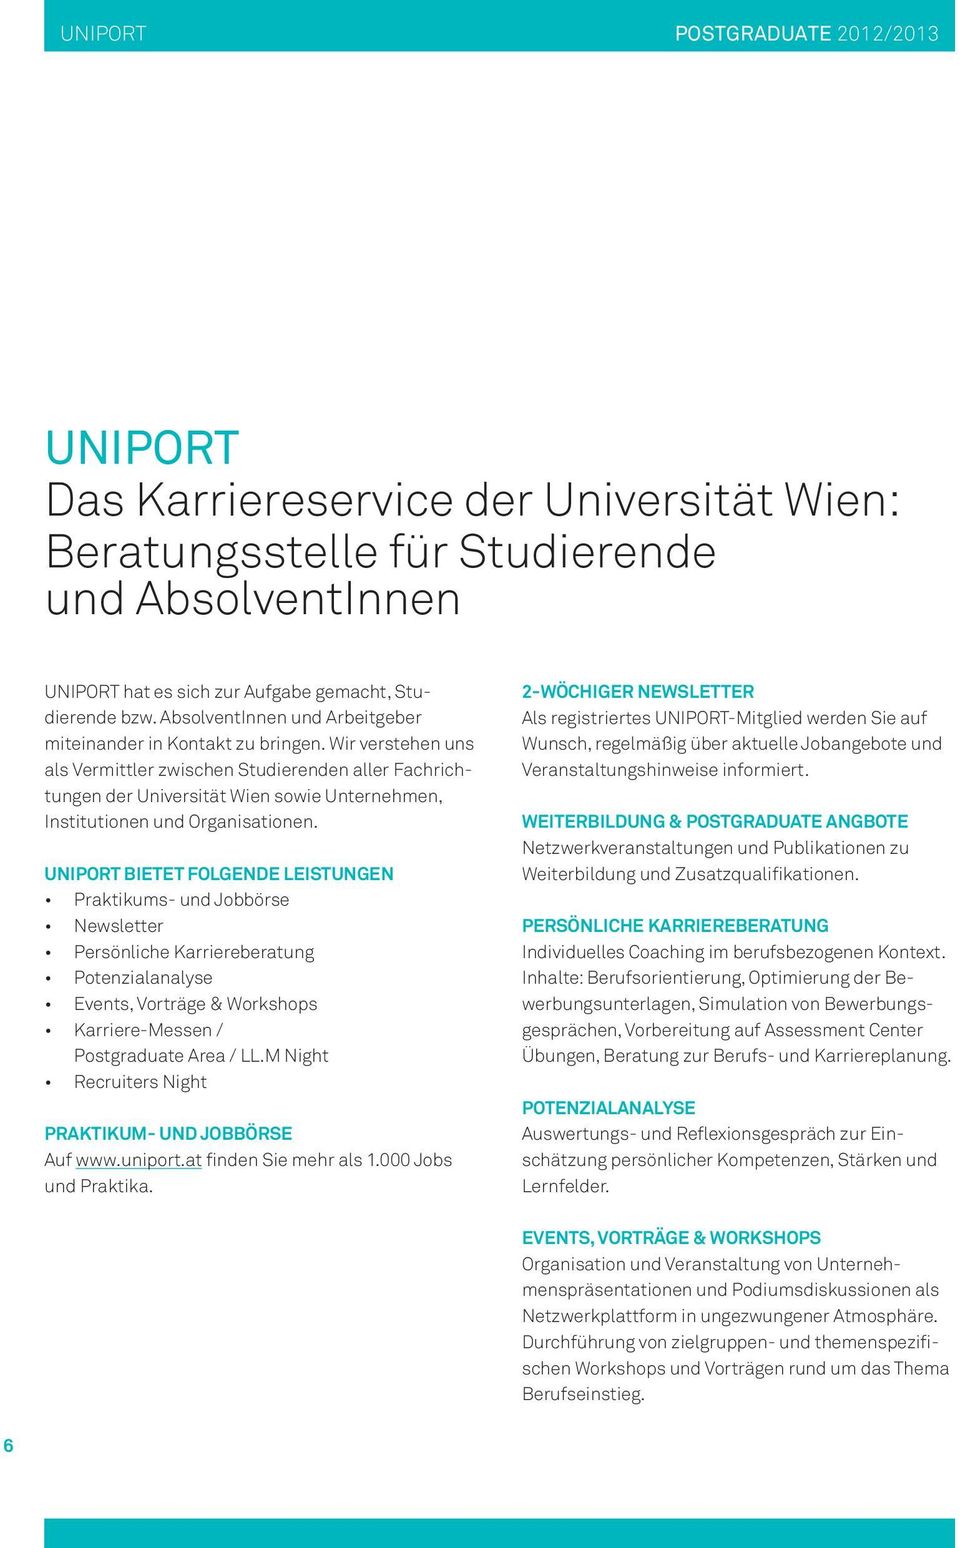 Wir verstehen uns als Vermittler zwischen Studierenden aller Fachrichtungen der Universität Wien sowie Unternehmen, Institutionen und Organisationen.